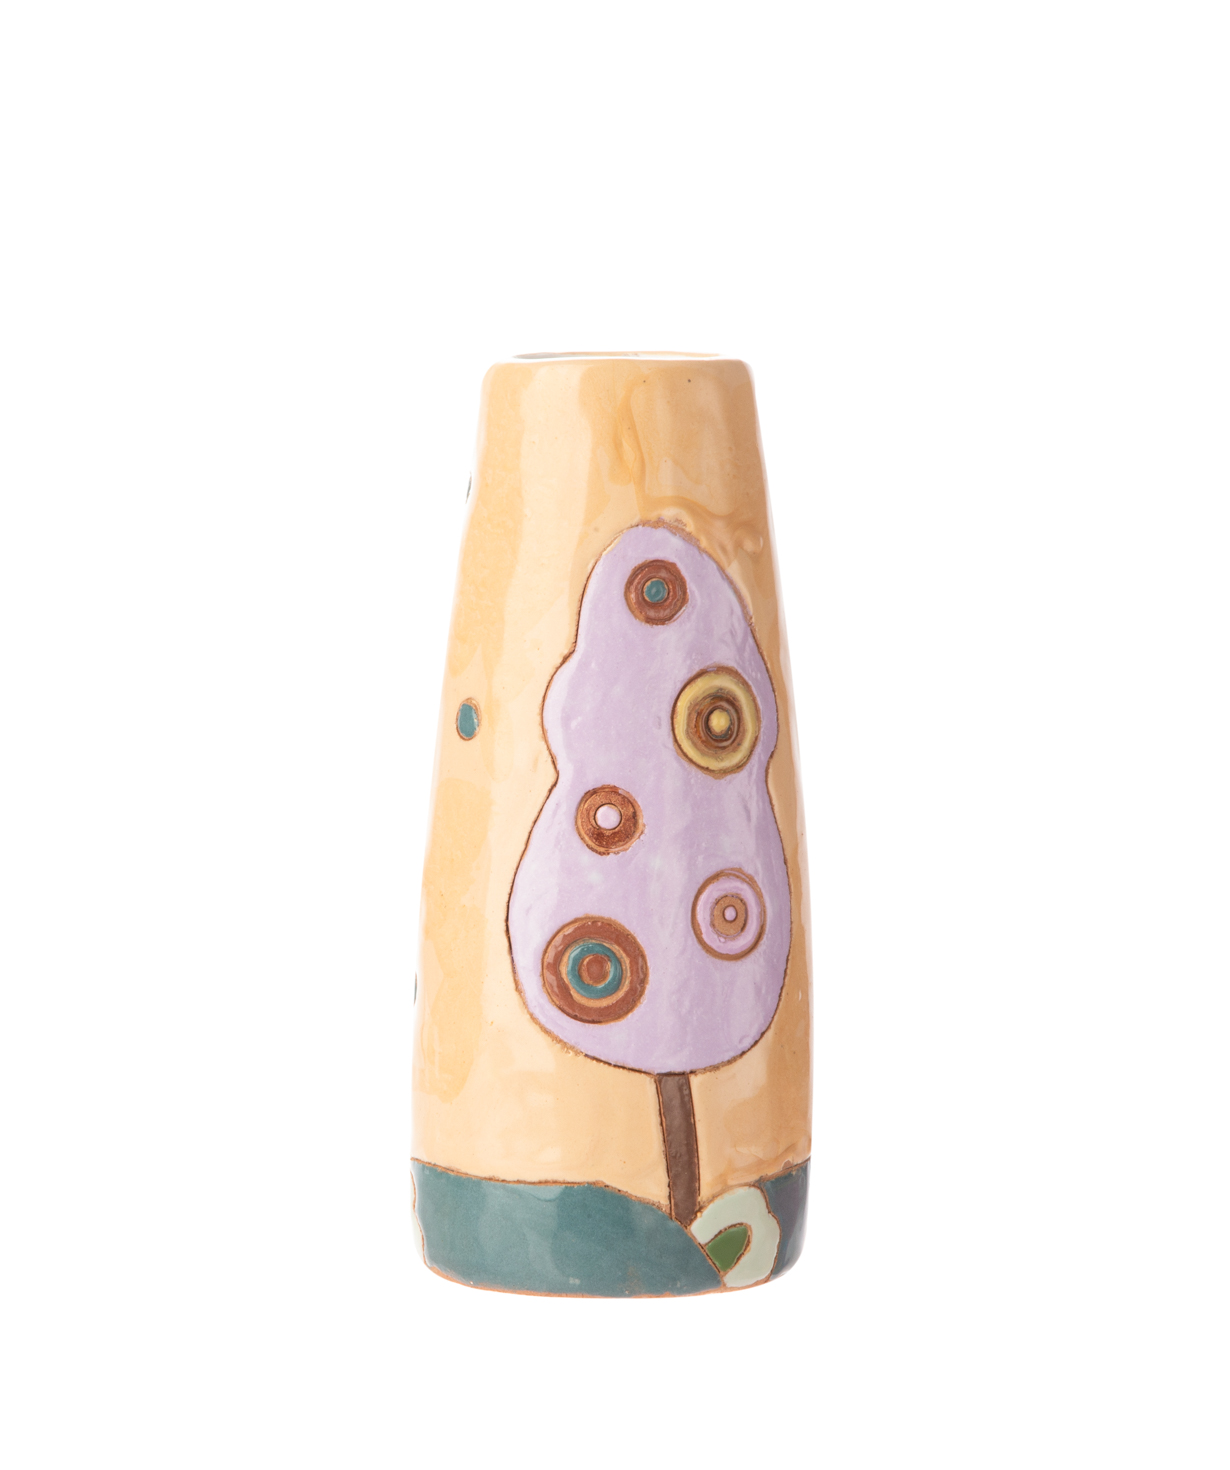 Ваза `Nuard Ceramics` для цветов, деревья №2